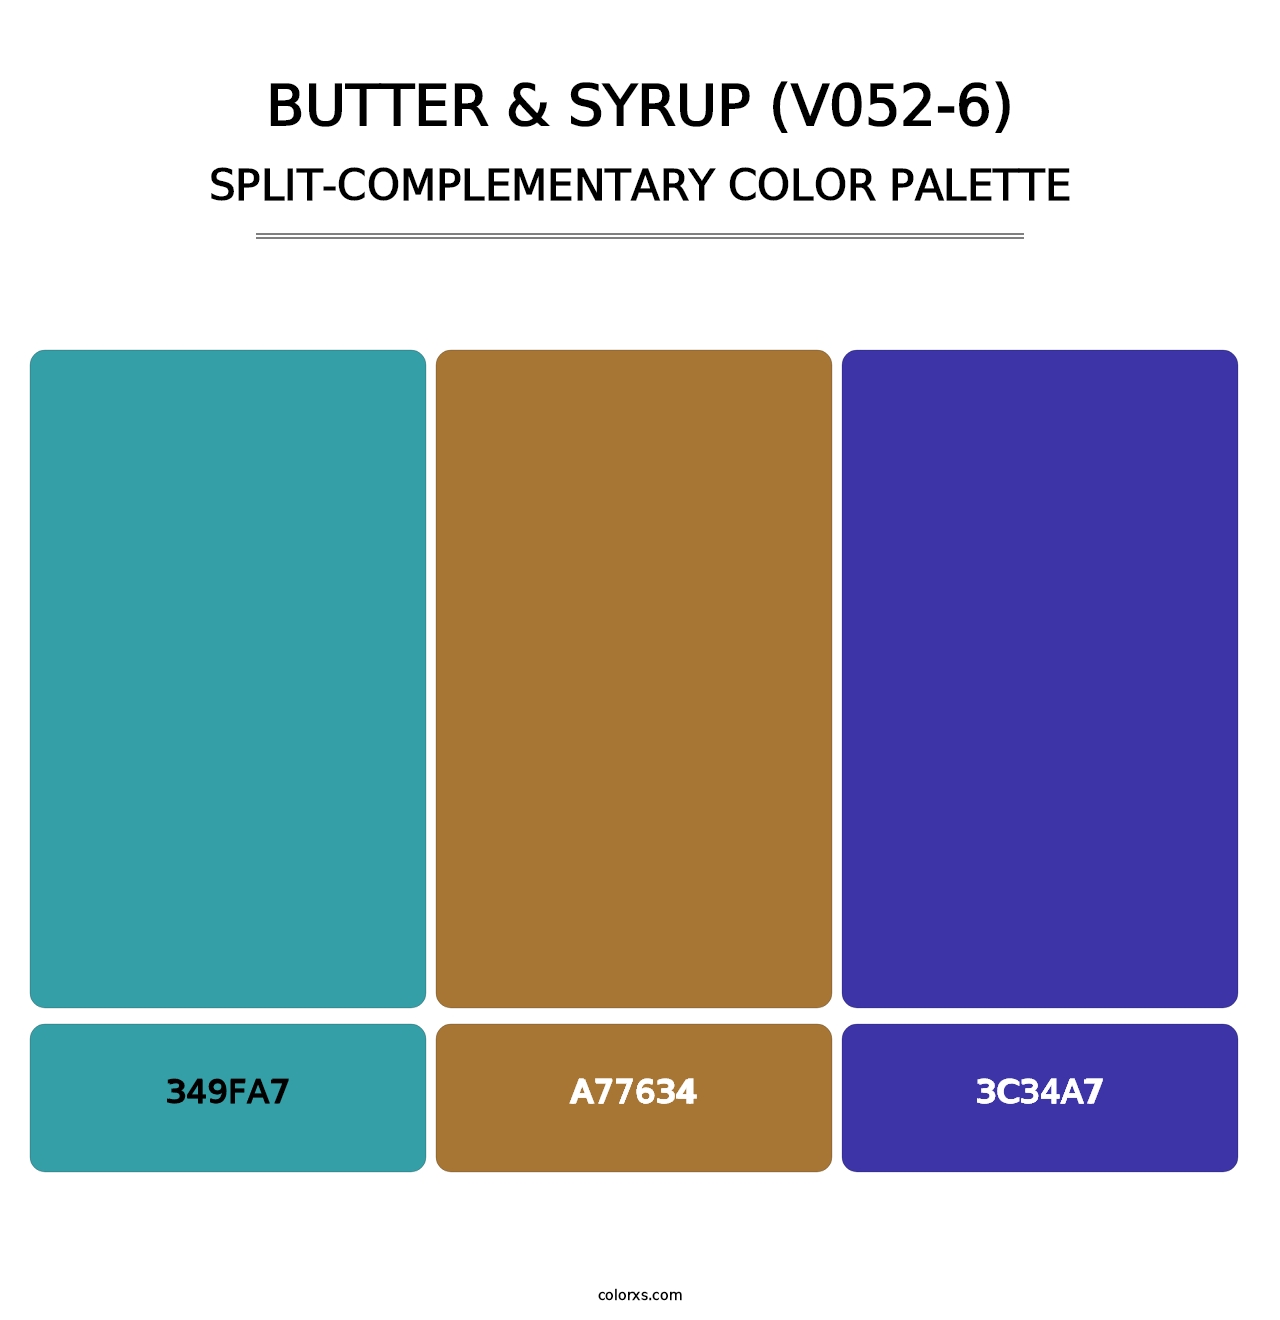 Butter & Syrup (V052-6) - Split-Complementary Color Palette